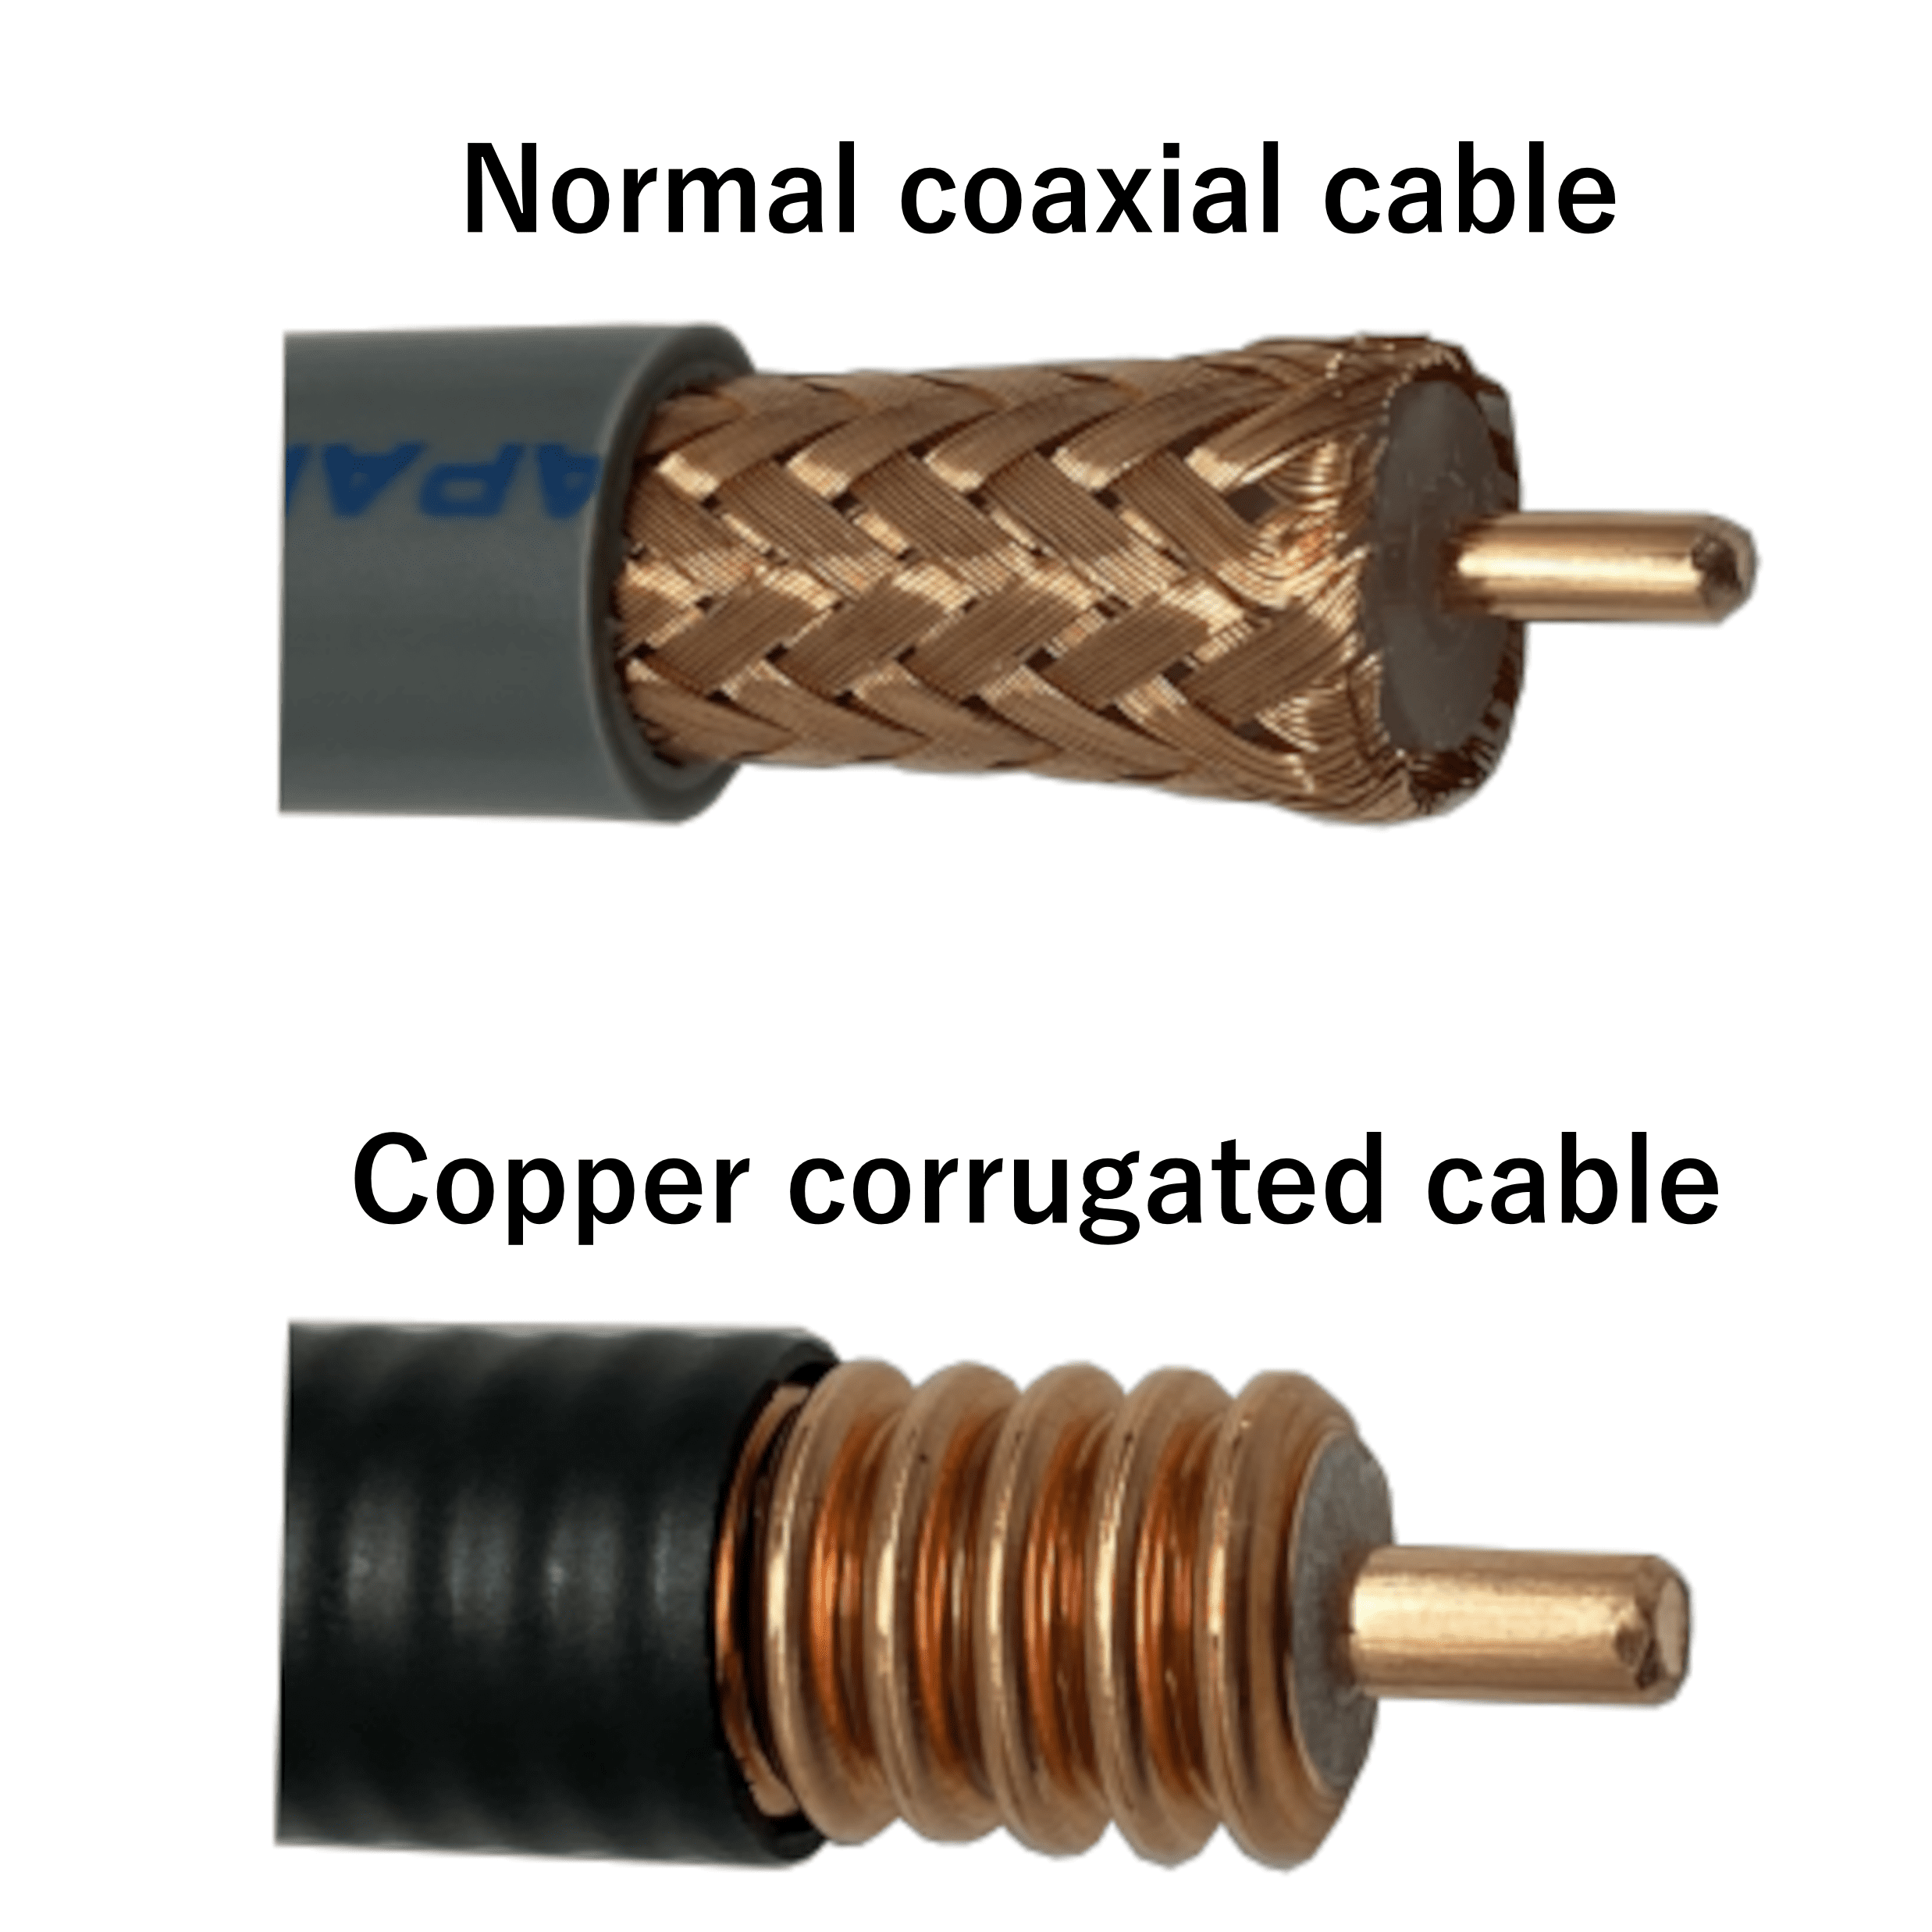 Copper corrugated cable